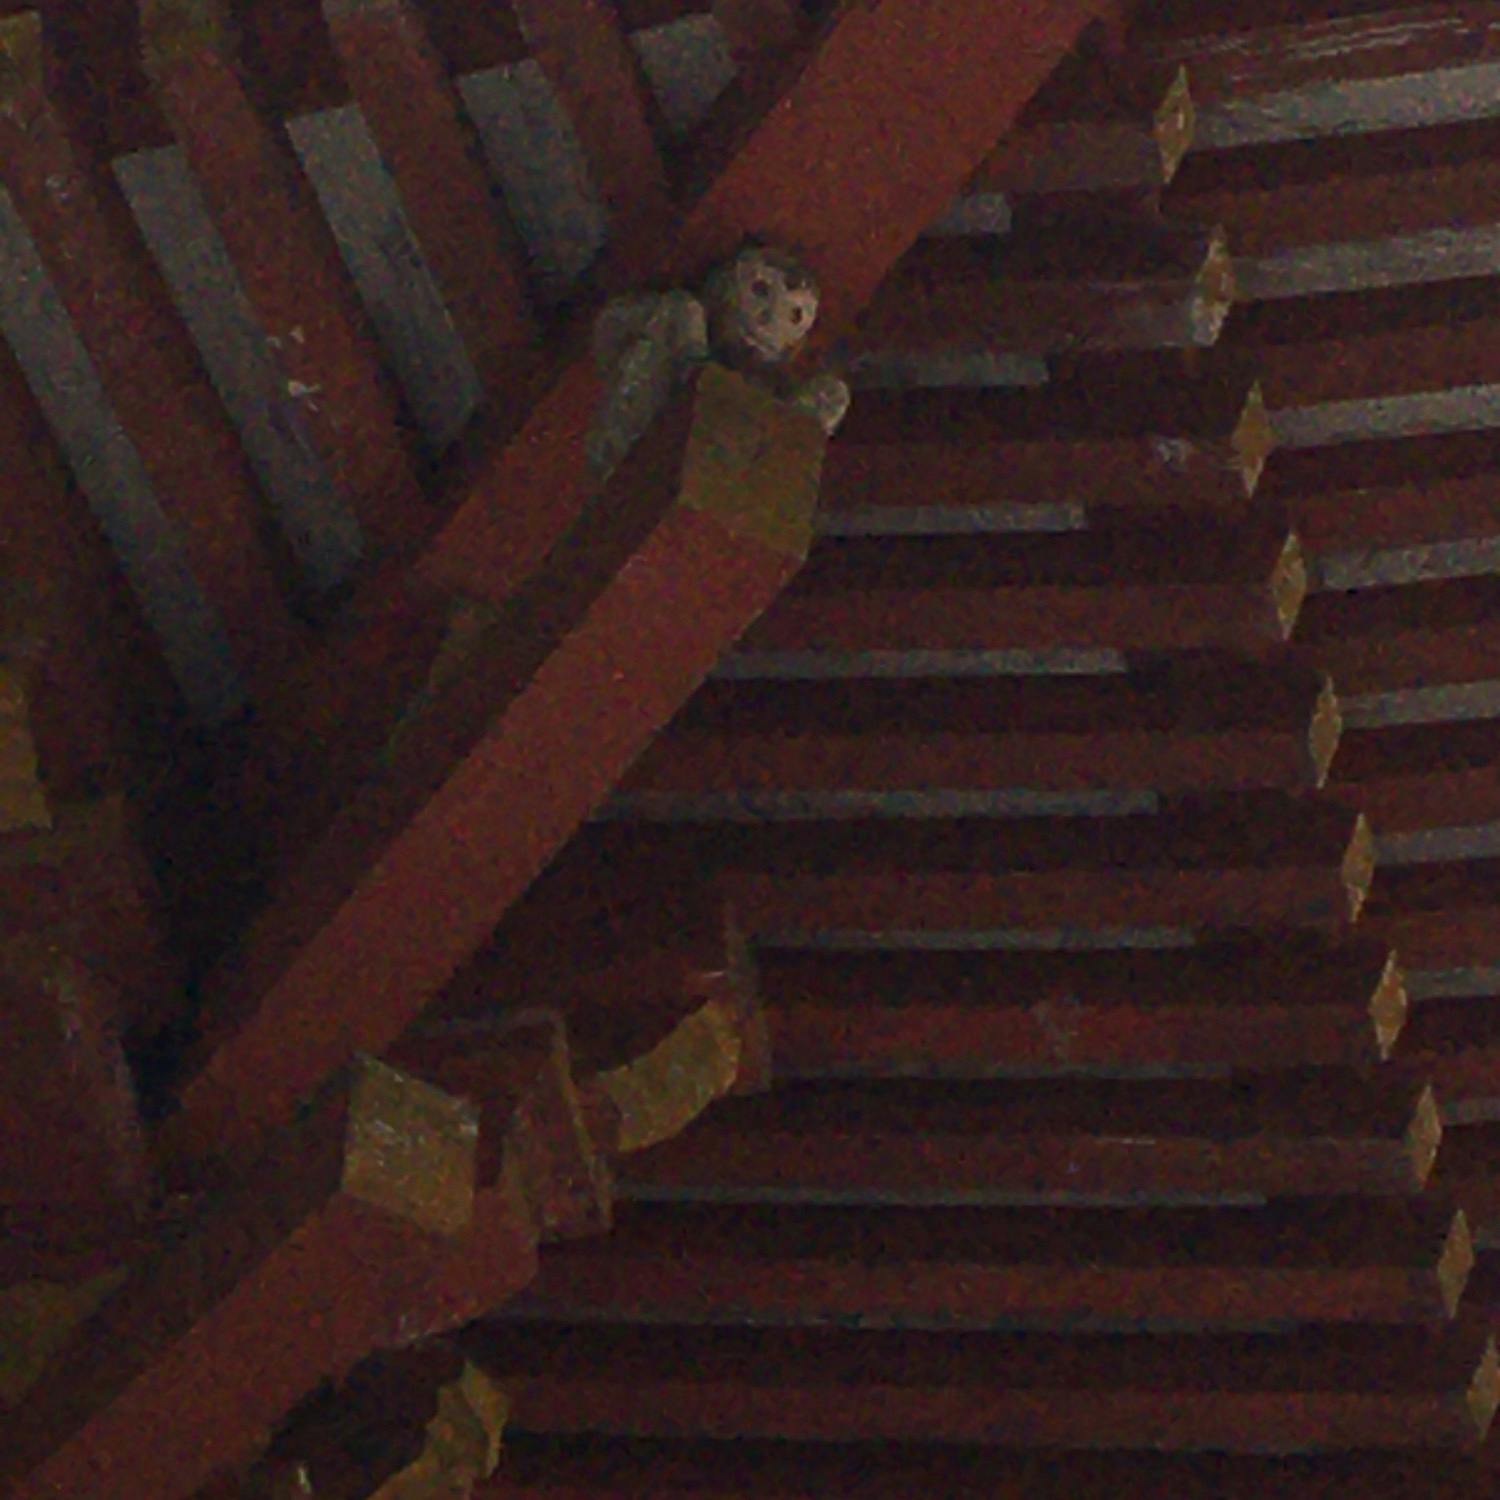 日吉大社 ひよしたいしゃ の投稿写真 感想 みどころ 大社を護っている神猿 まさる 楼門の四隅を支えています トリップノート